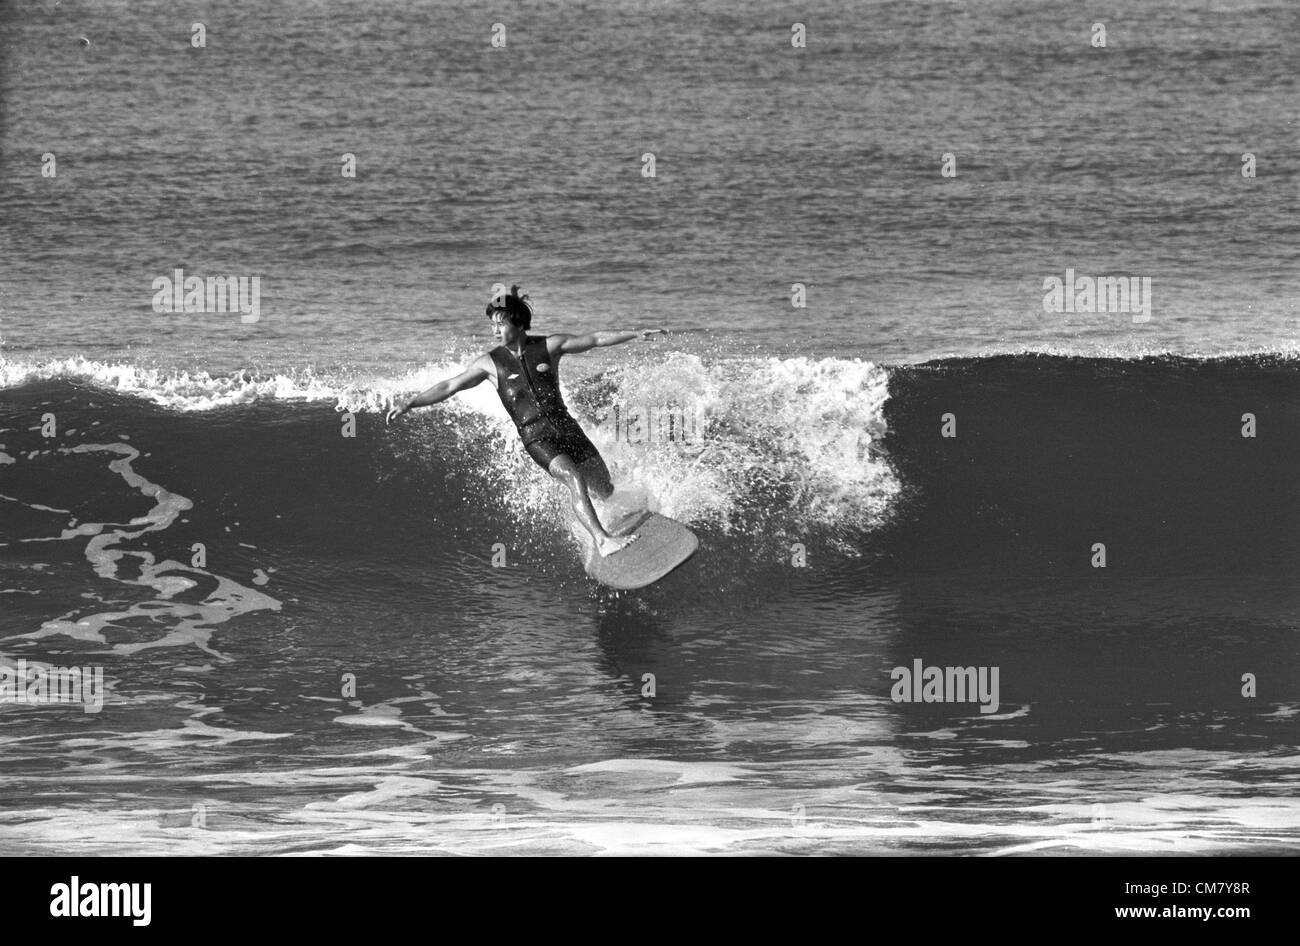 Ottobre 22, 2012 - Los Angeles, California, Stati Uniti - FILE: iconico surfboard shaper DONALD TAKAYAMA muore di un attacco di cuore. Nato nel 1944, Takayama acclamato da Waikiki Hawaii, e si alzò per acclamazione competitivo negli anni sessanta, finitura runner-up negli Stati Uniti con la tavola da surf campionati nel '66 e '67. Quando Takayama era 12 anni egli ha salvato il denaro da un percorso della carta nelle Hawaii, ha acquistato un biglietto per Los Angeles e ha iniziato la sagomatura per Velzy/Jacobs tavole da surf. Ha servito come uno stint a Weber tavole da surf, iniziare eventualmente la sua propria etichetta delle tavole da surf, Hawaiian Pro Designs. (Credito Immagine: © Driver/A-Frame/ZUMAPRESS.com) Foto Stock